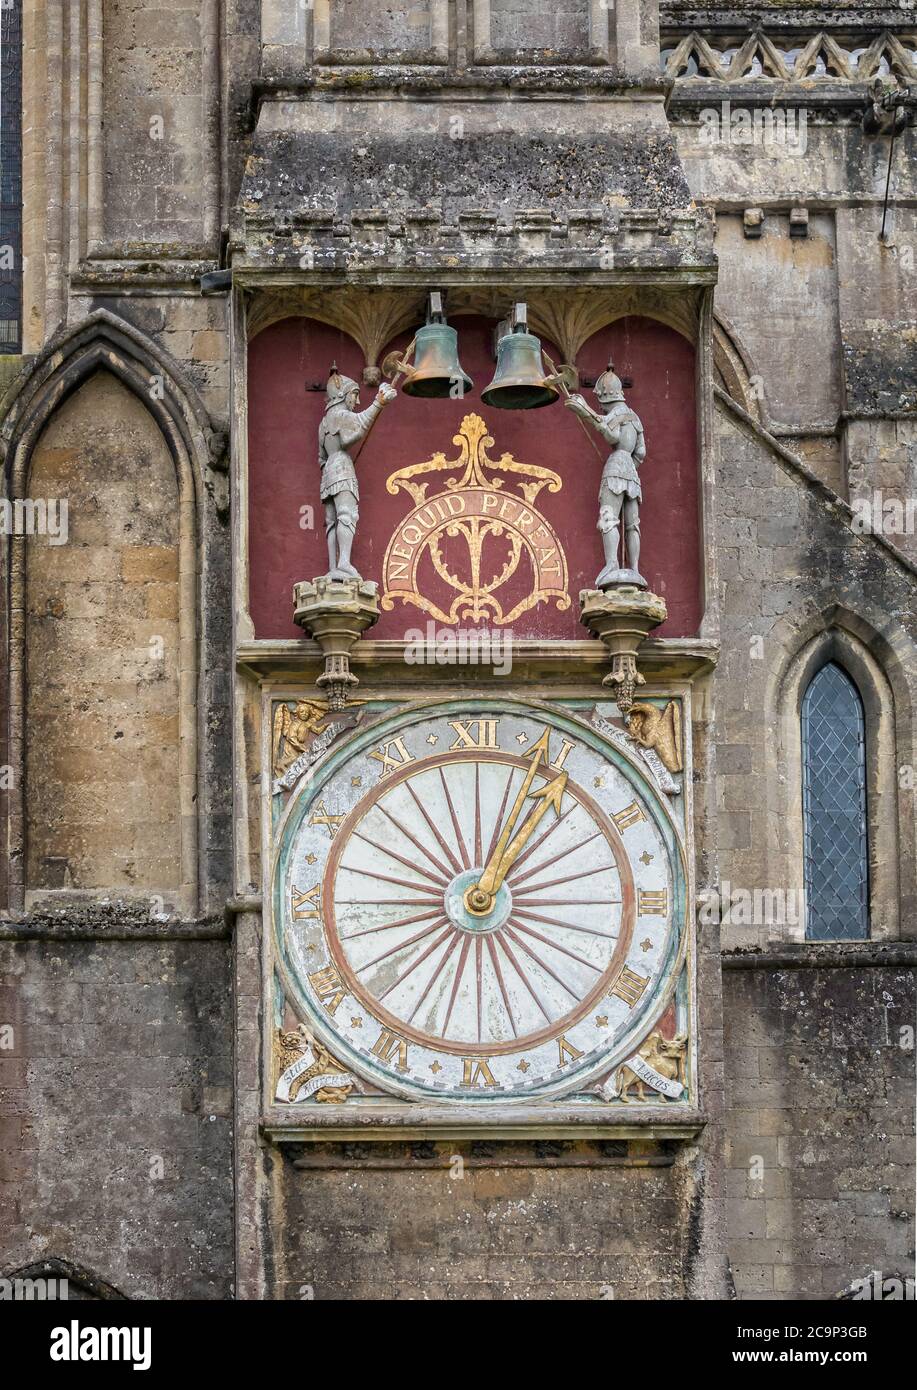 Nahaufnahme der Außenansicht der Wells Cathedral Uhr in Wells, Somerset, Großbritannien am 28. Juli 2020 Stockfoto